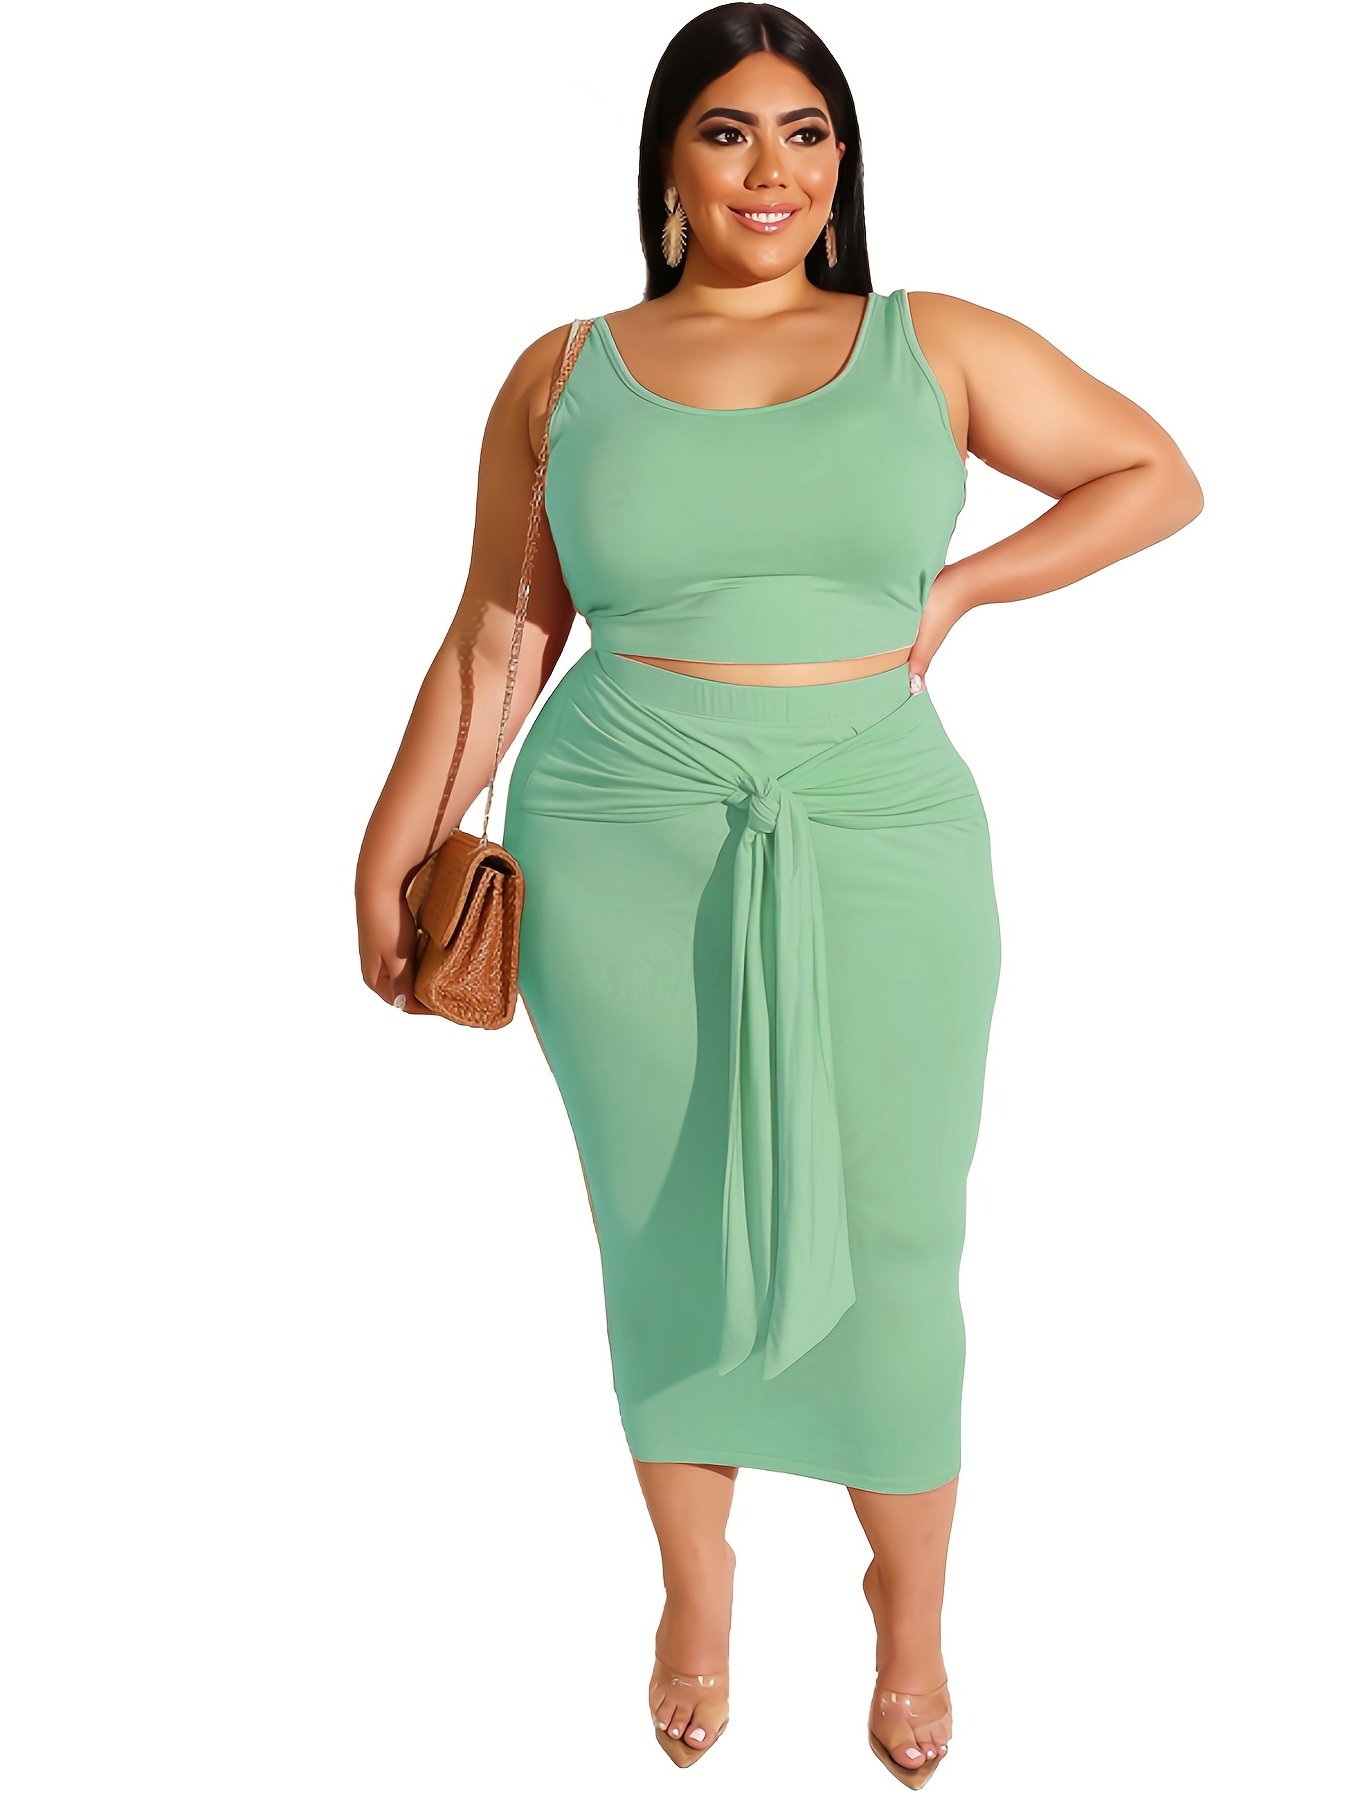 Plus Size 2pcs Solid Color Women Suits Crop Top + Long Skirt Set